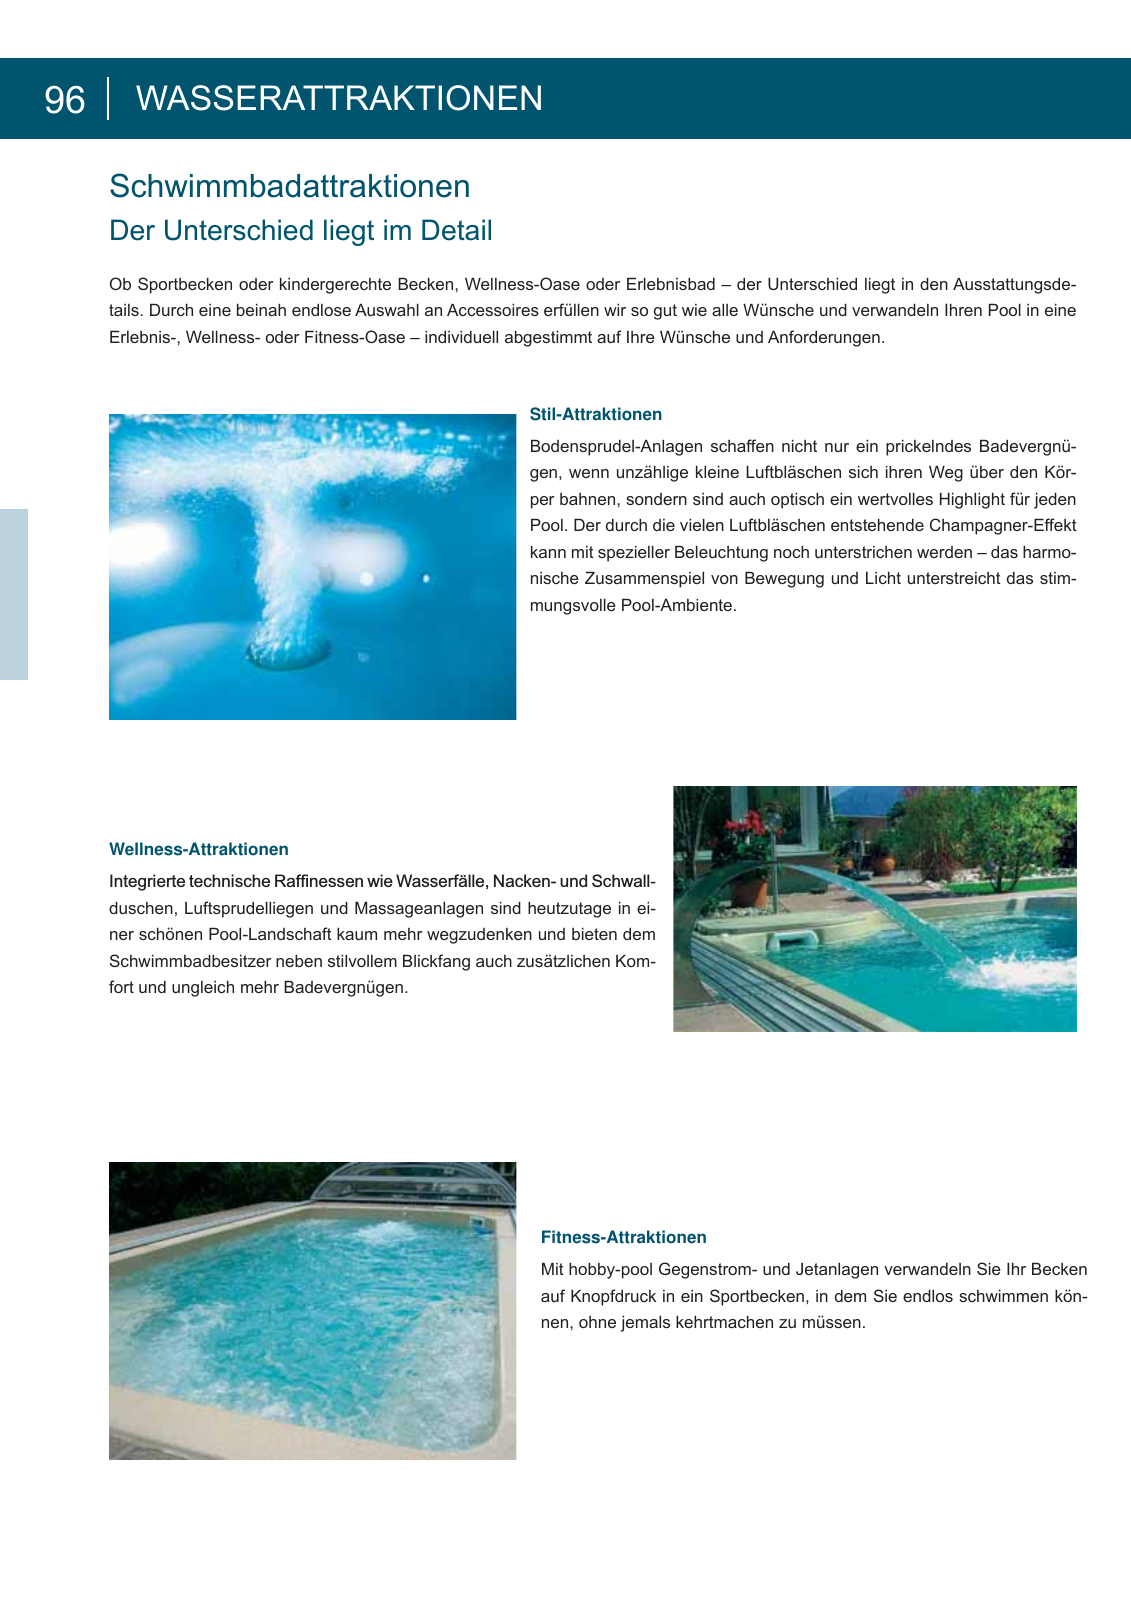 Vorschau arcana Schwimmbadkatalog Seite 96